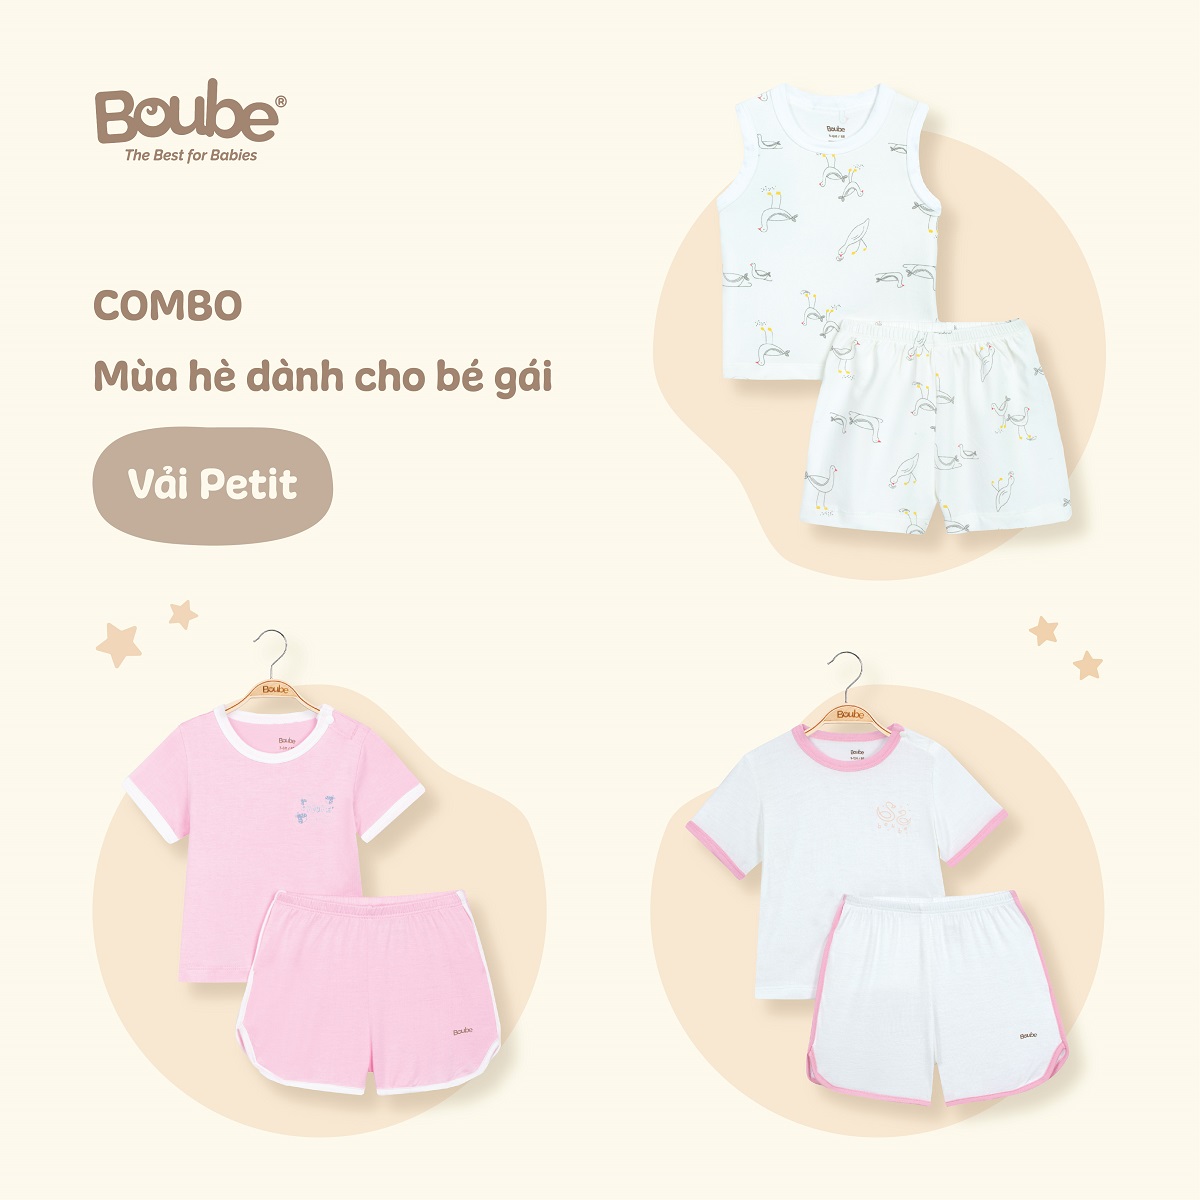 Combo 3 bộ quần áo mùa hè mát mẻ cho bé gái Boube, chất vải Petit mềm mịn, thoáng mát - Full size cho bé 0-24M (3-15kg